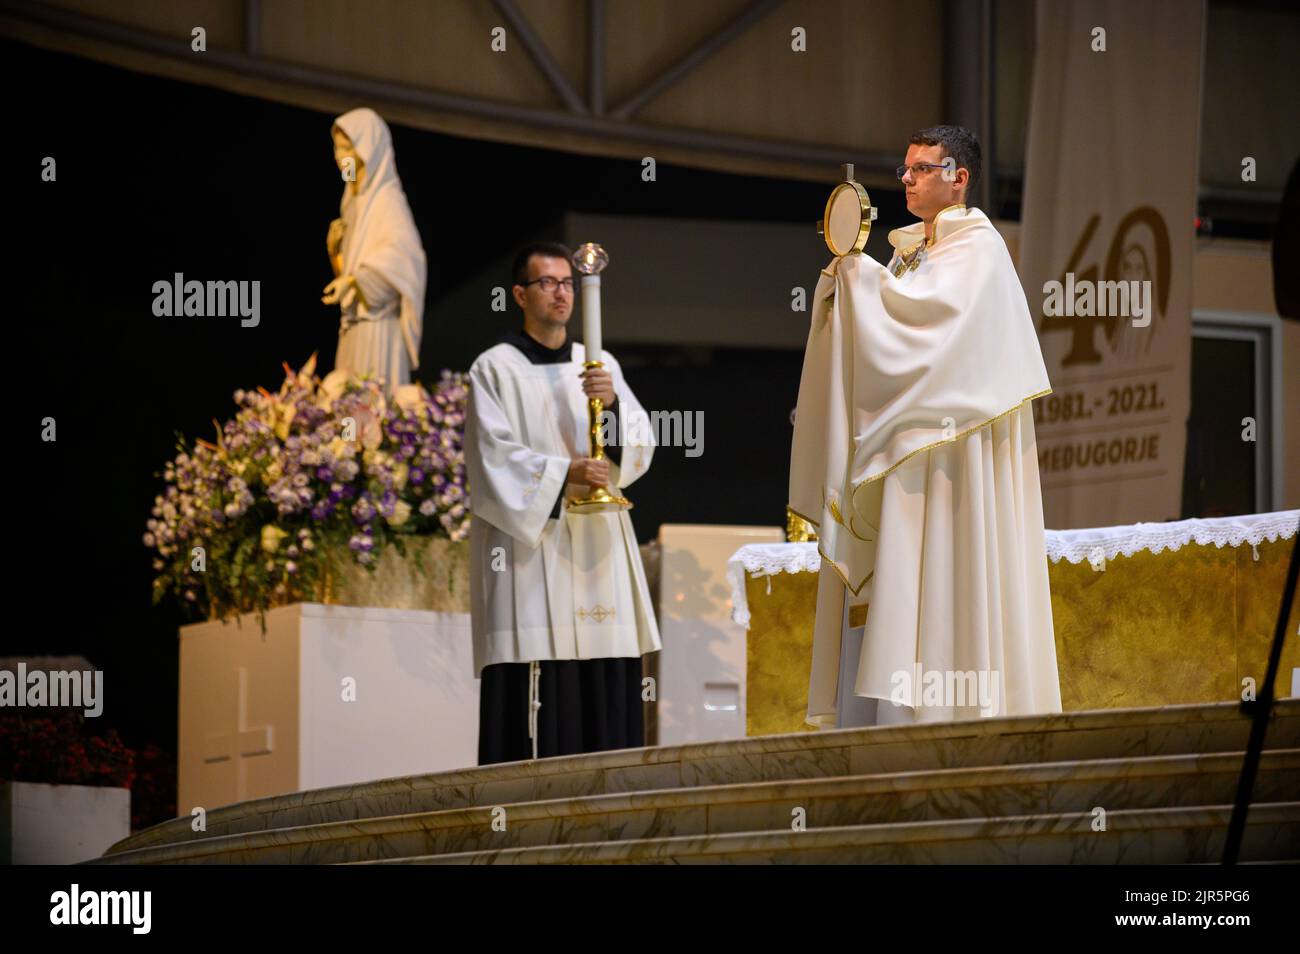 Un sacerdote benedice i fedeli con il Santissimo Sacramento al termine di un adorazione eucaristica a Medjugorje, Bosnia-Erzegovina. Foto Stock